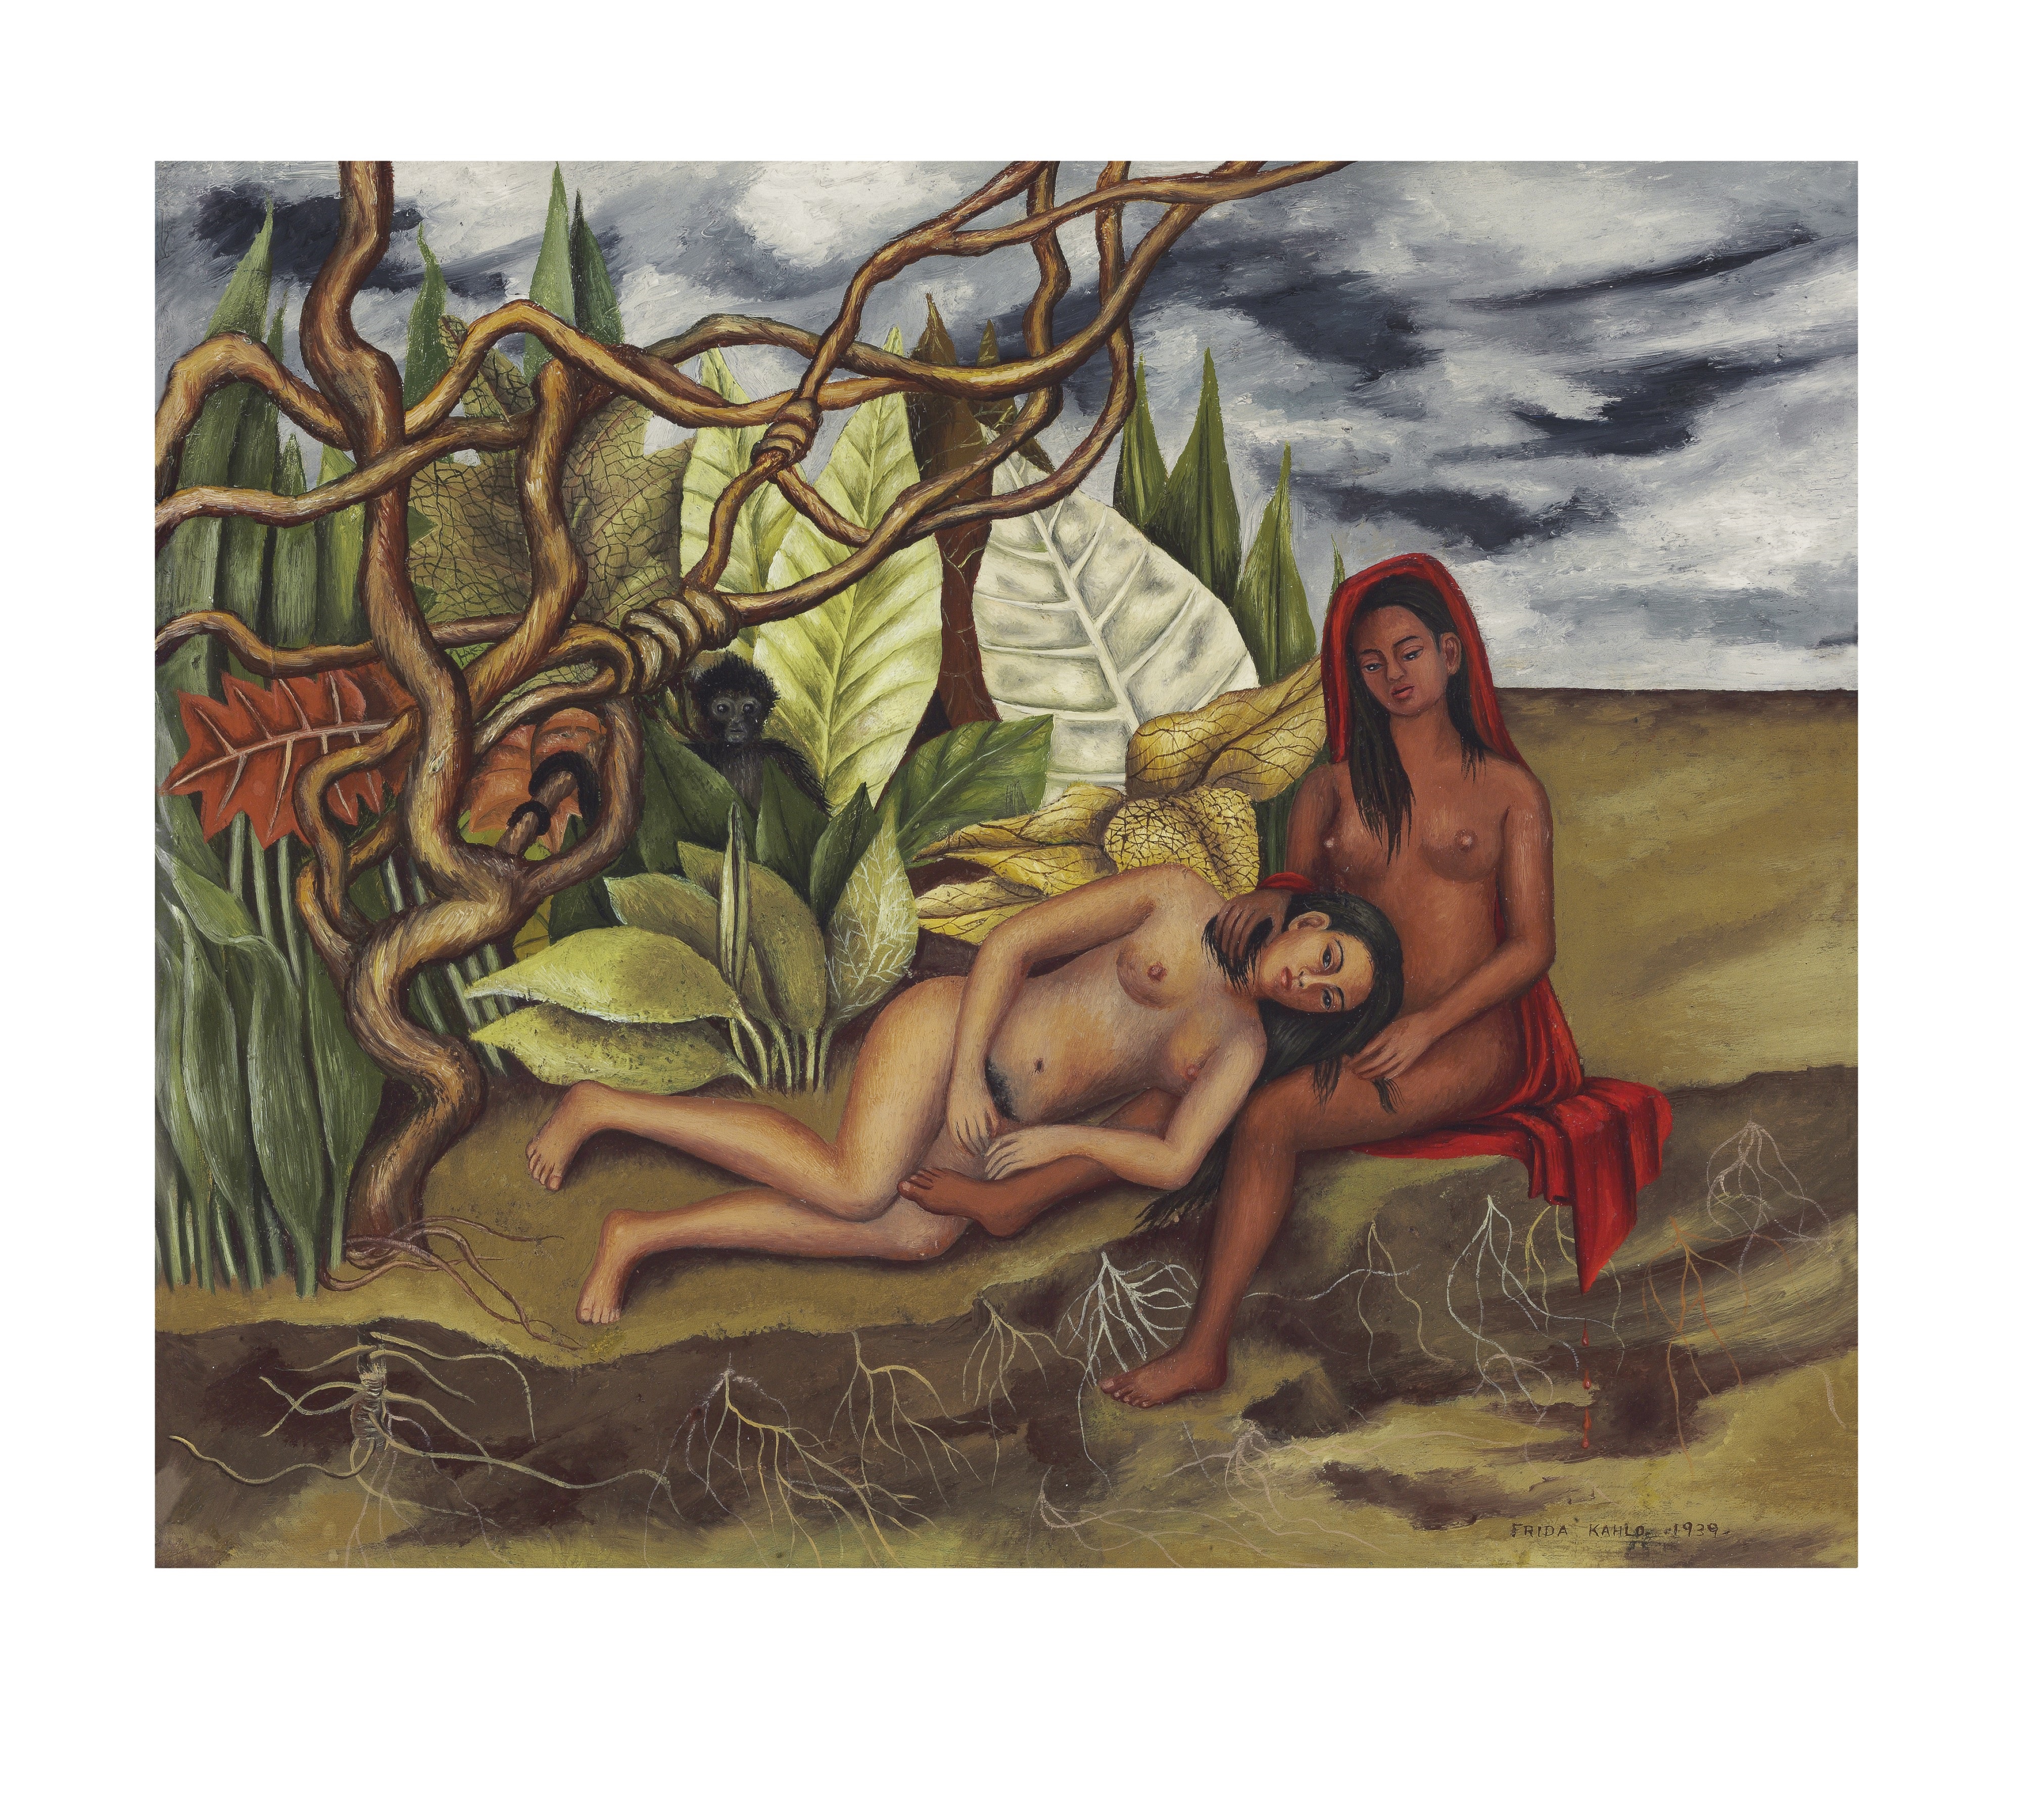 Frida Jahlo's Dos desnunos en el bosque